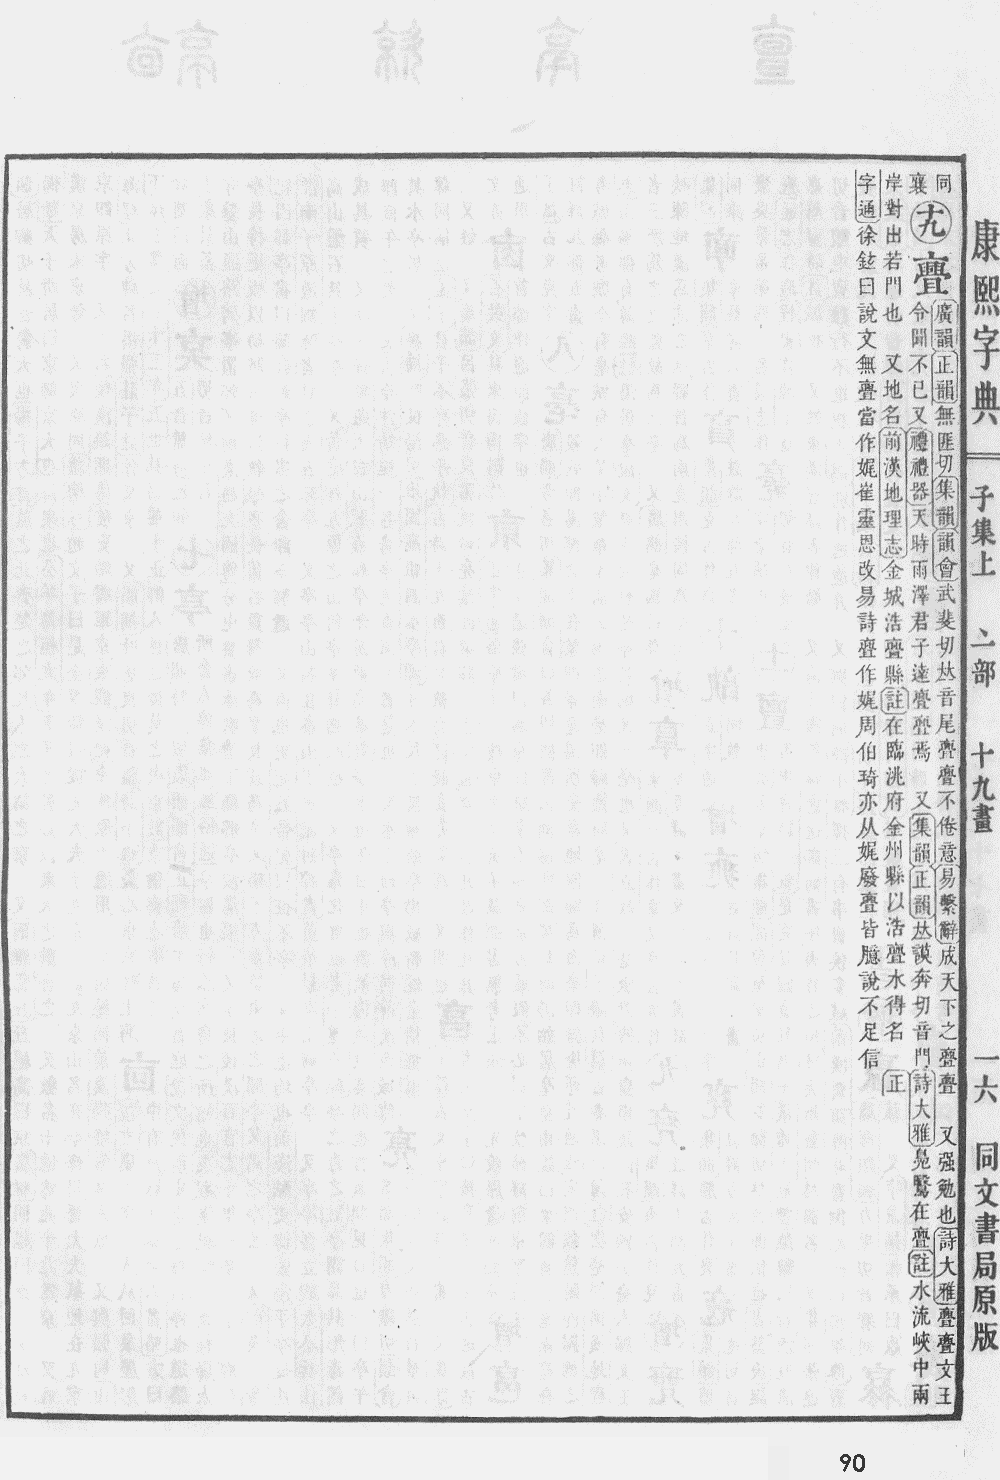 康熙字典掃描版第90頁